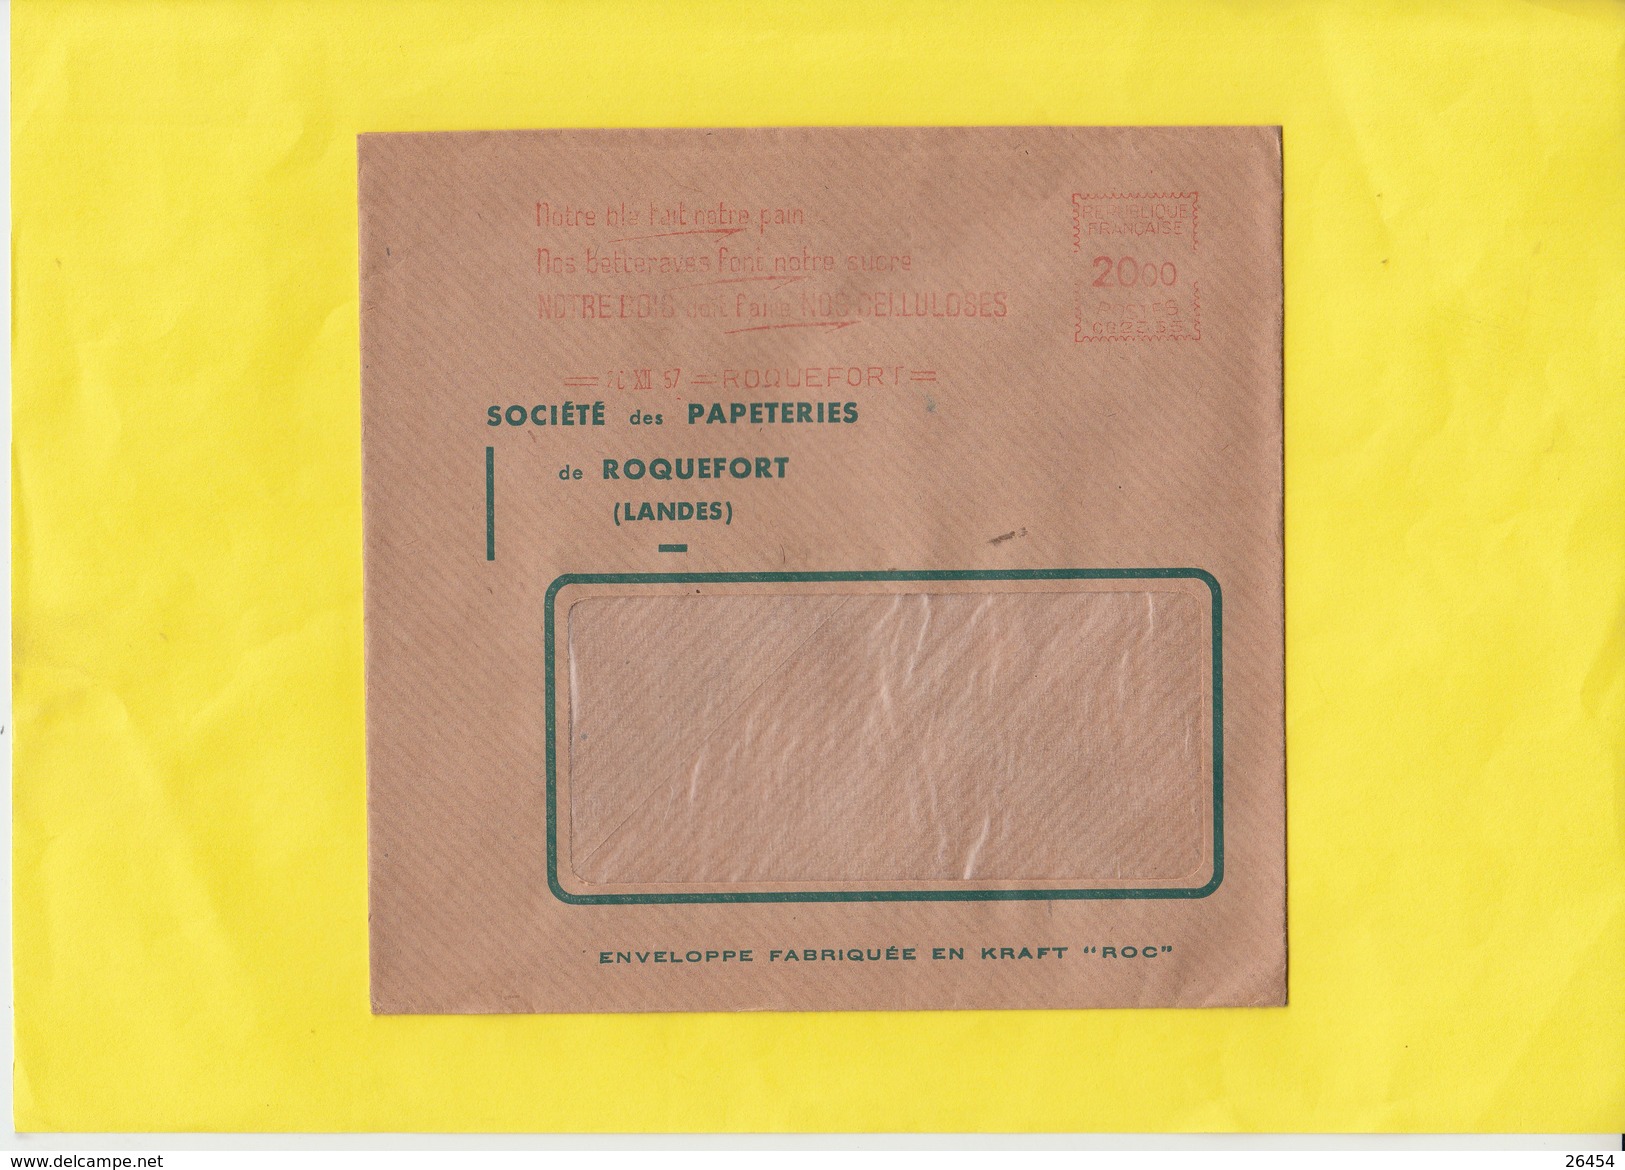 20   EMA   sur lettre  de FRANCE sauf  PARIS     annees 1956  1957 et 1958